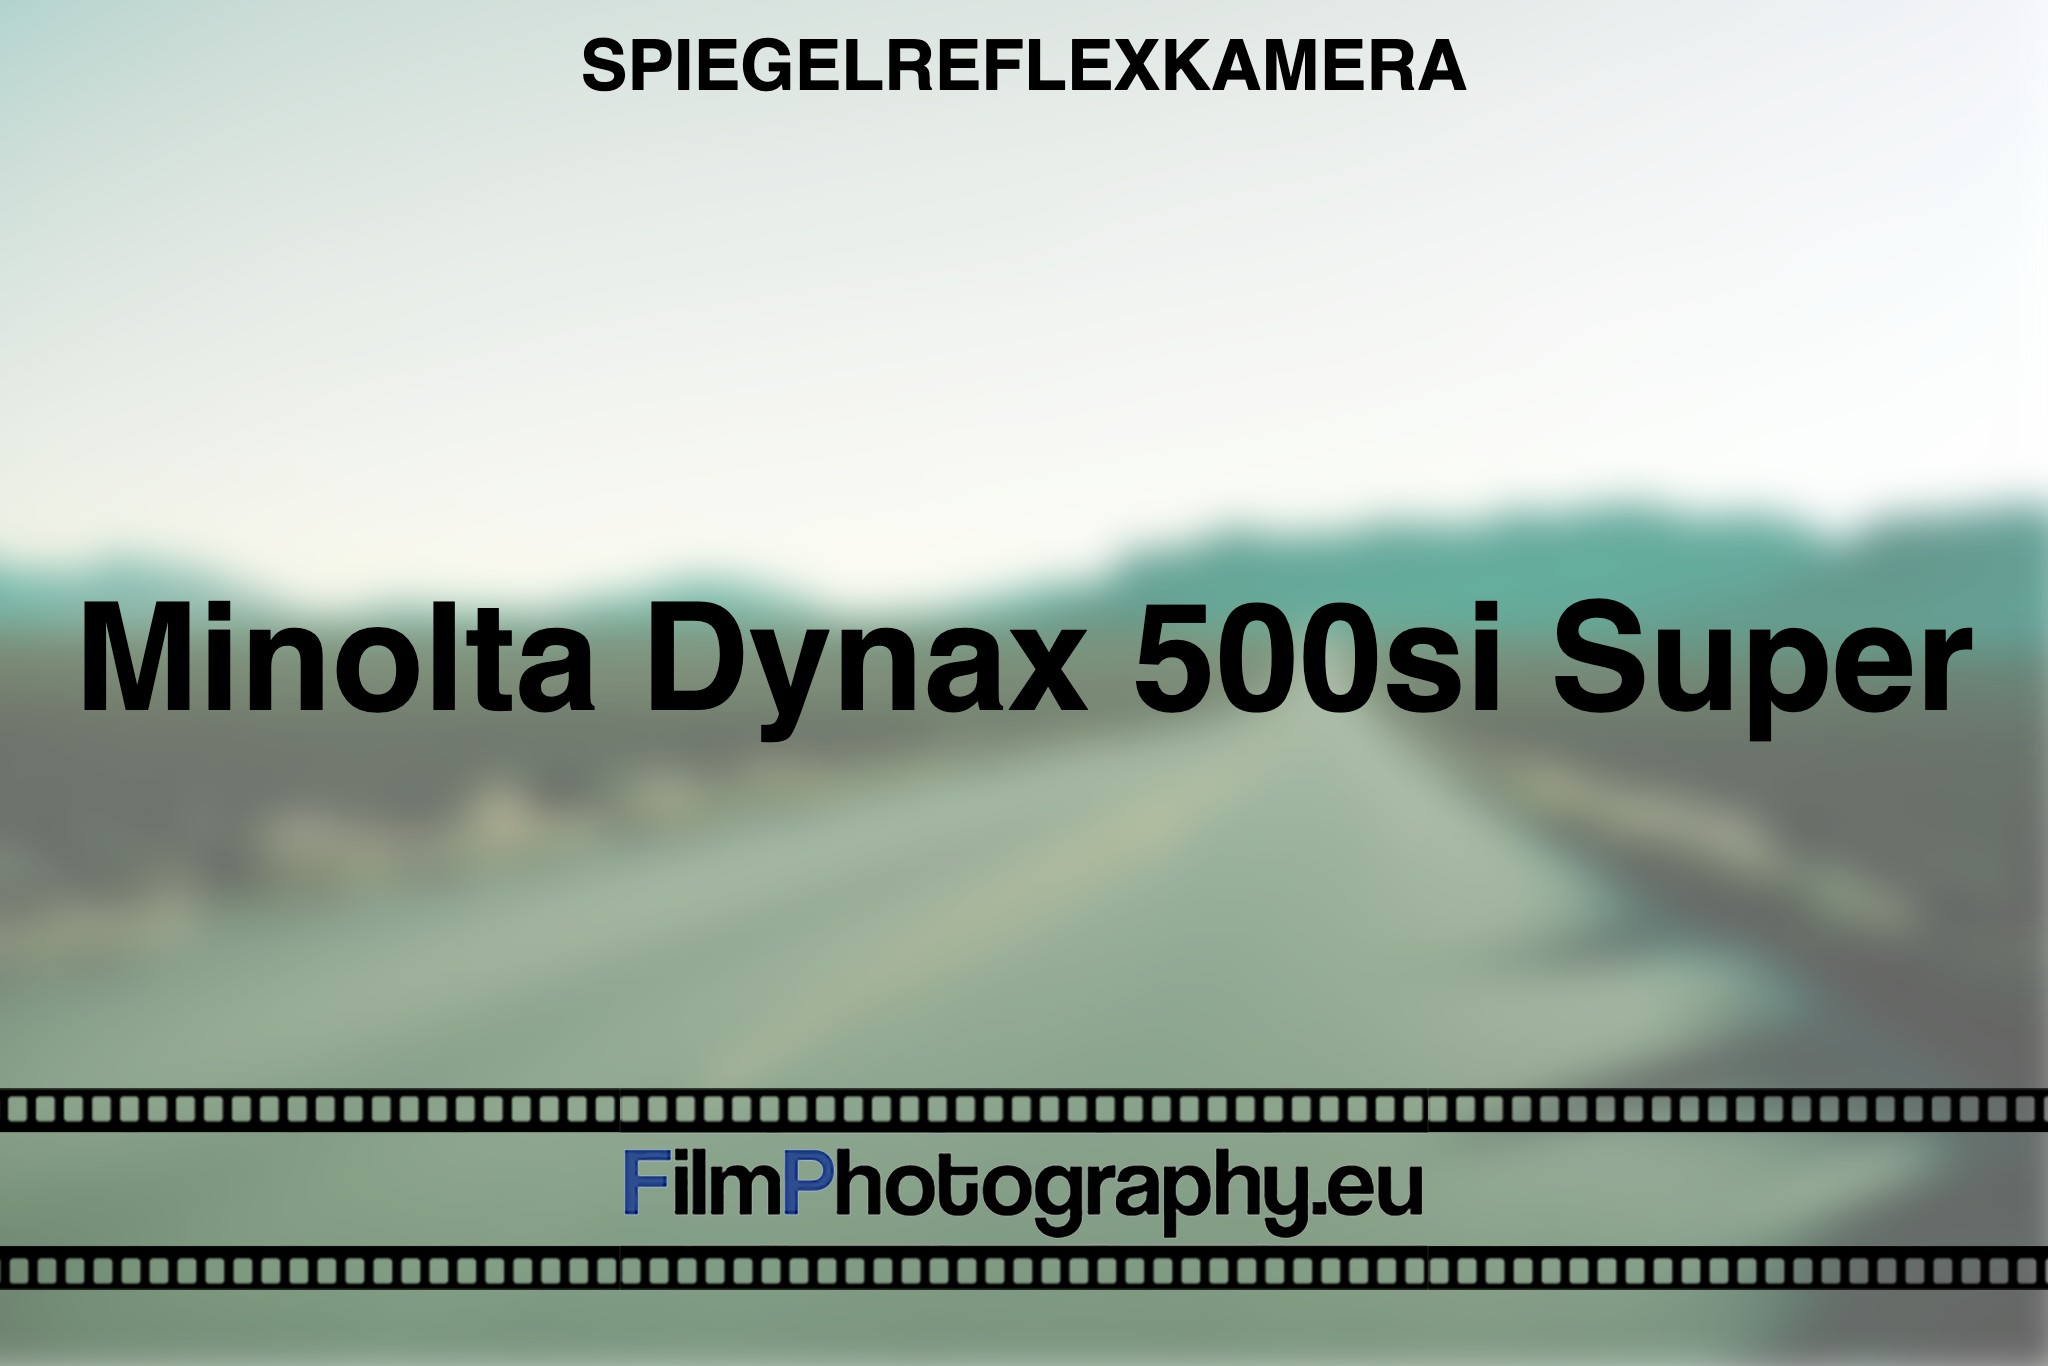 minolta-dynax-500si-super-spiegelreflexkamera-bnv